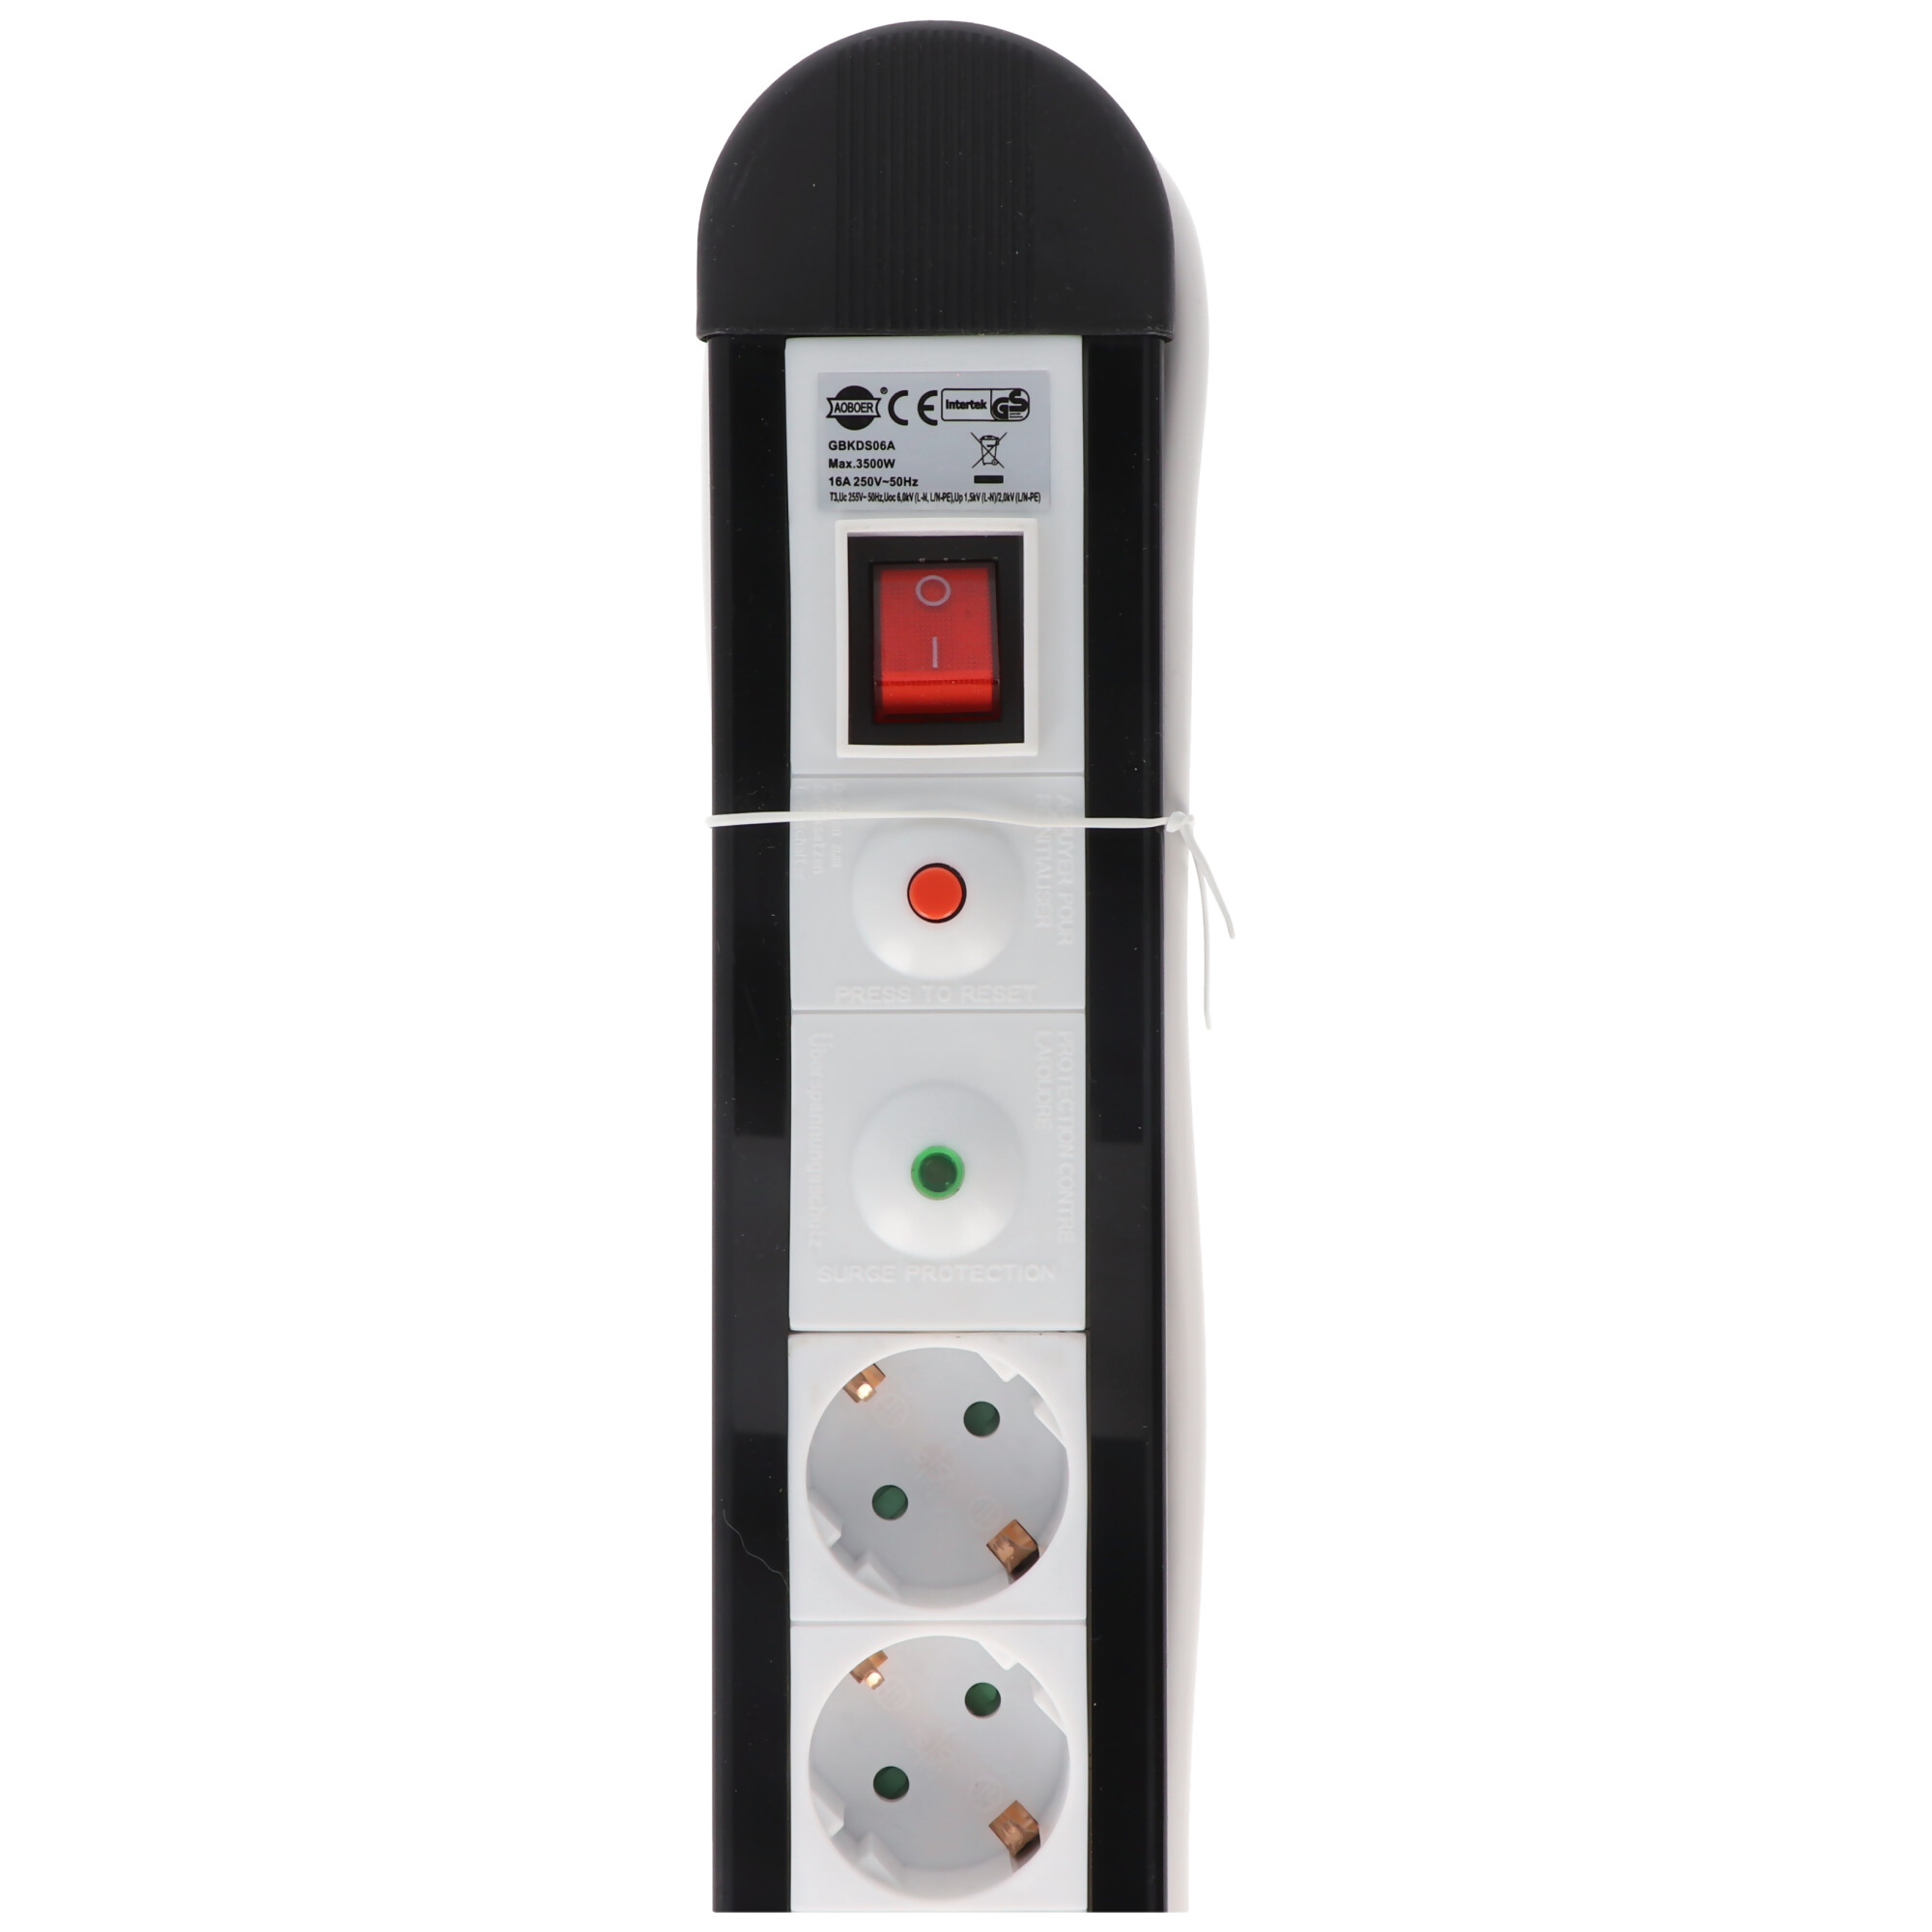 Überspannungsschutz-Steckdosenleiste 6x Schutzkontakt mit 1,4m Zuleitung und Schalter schwarz / weiß